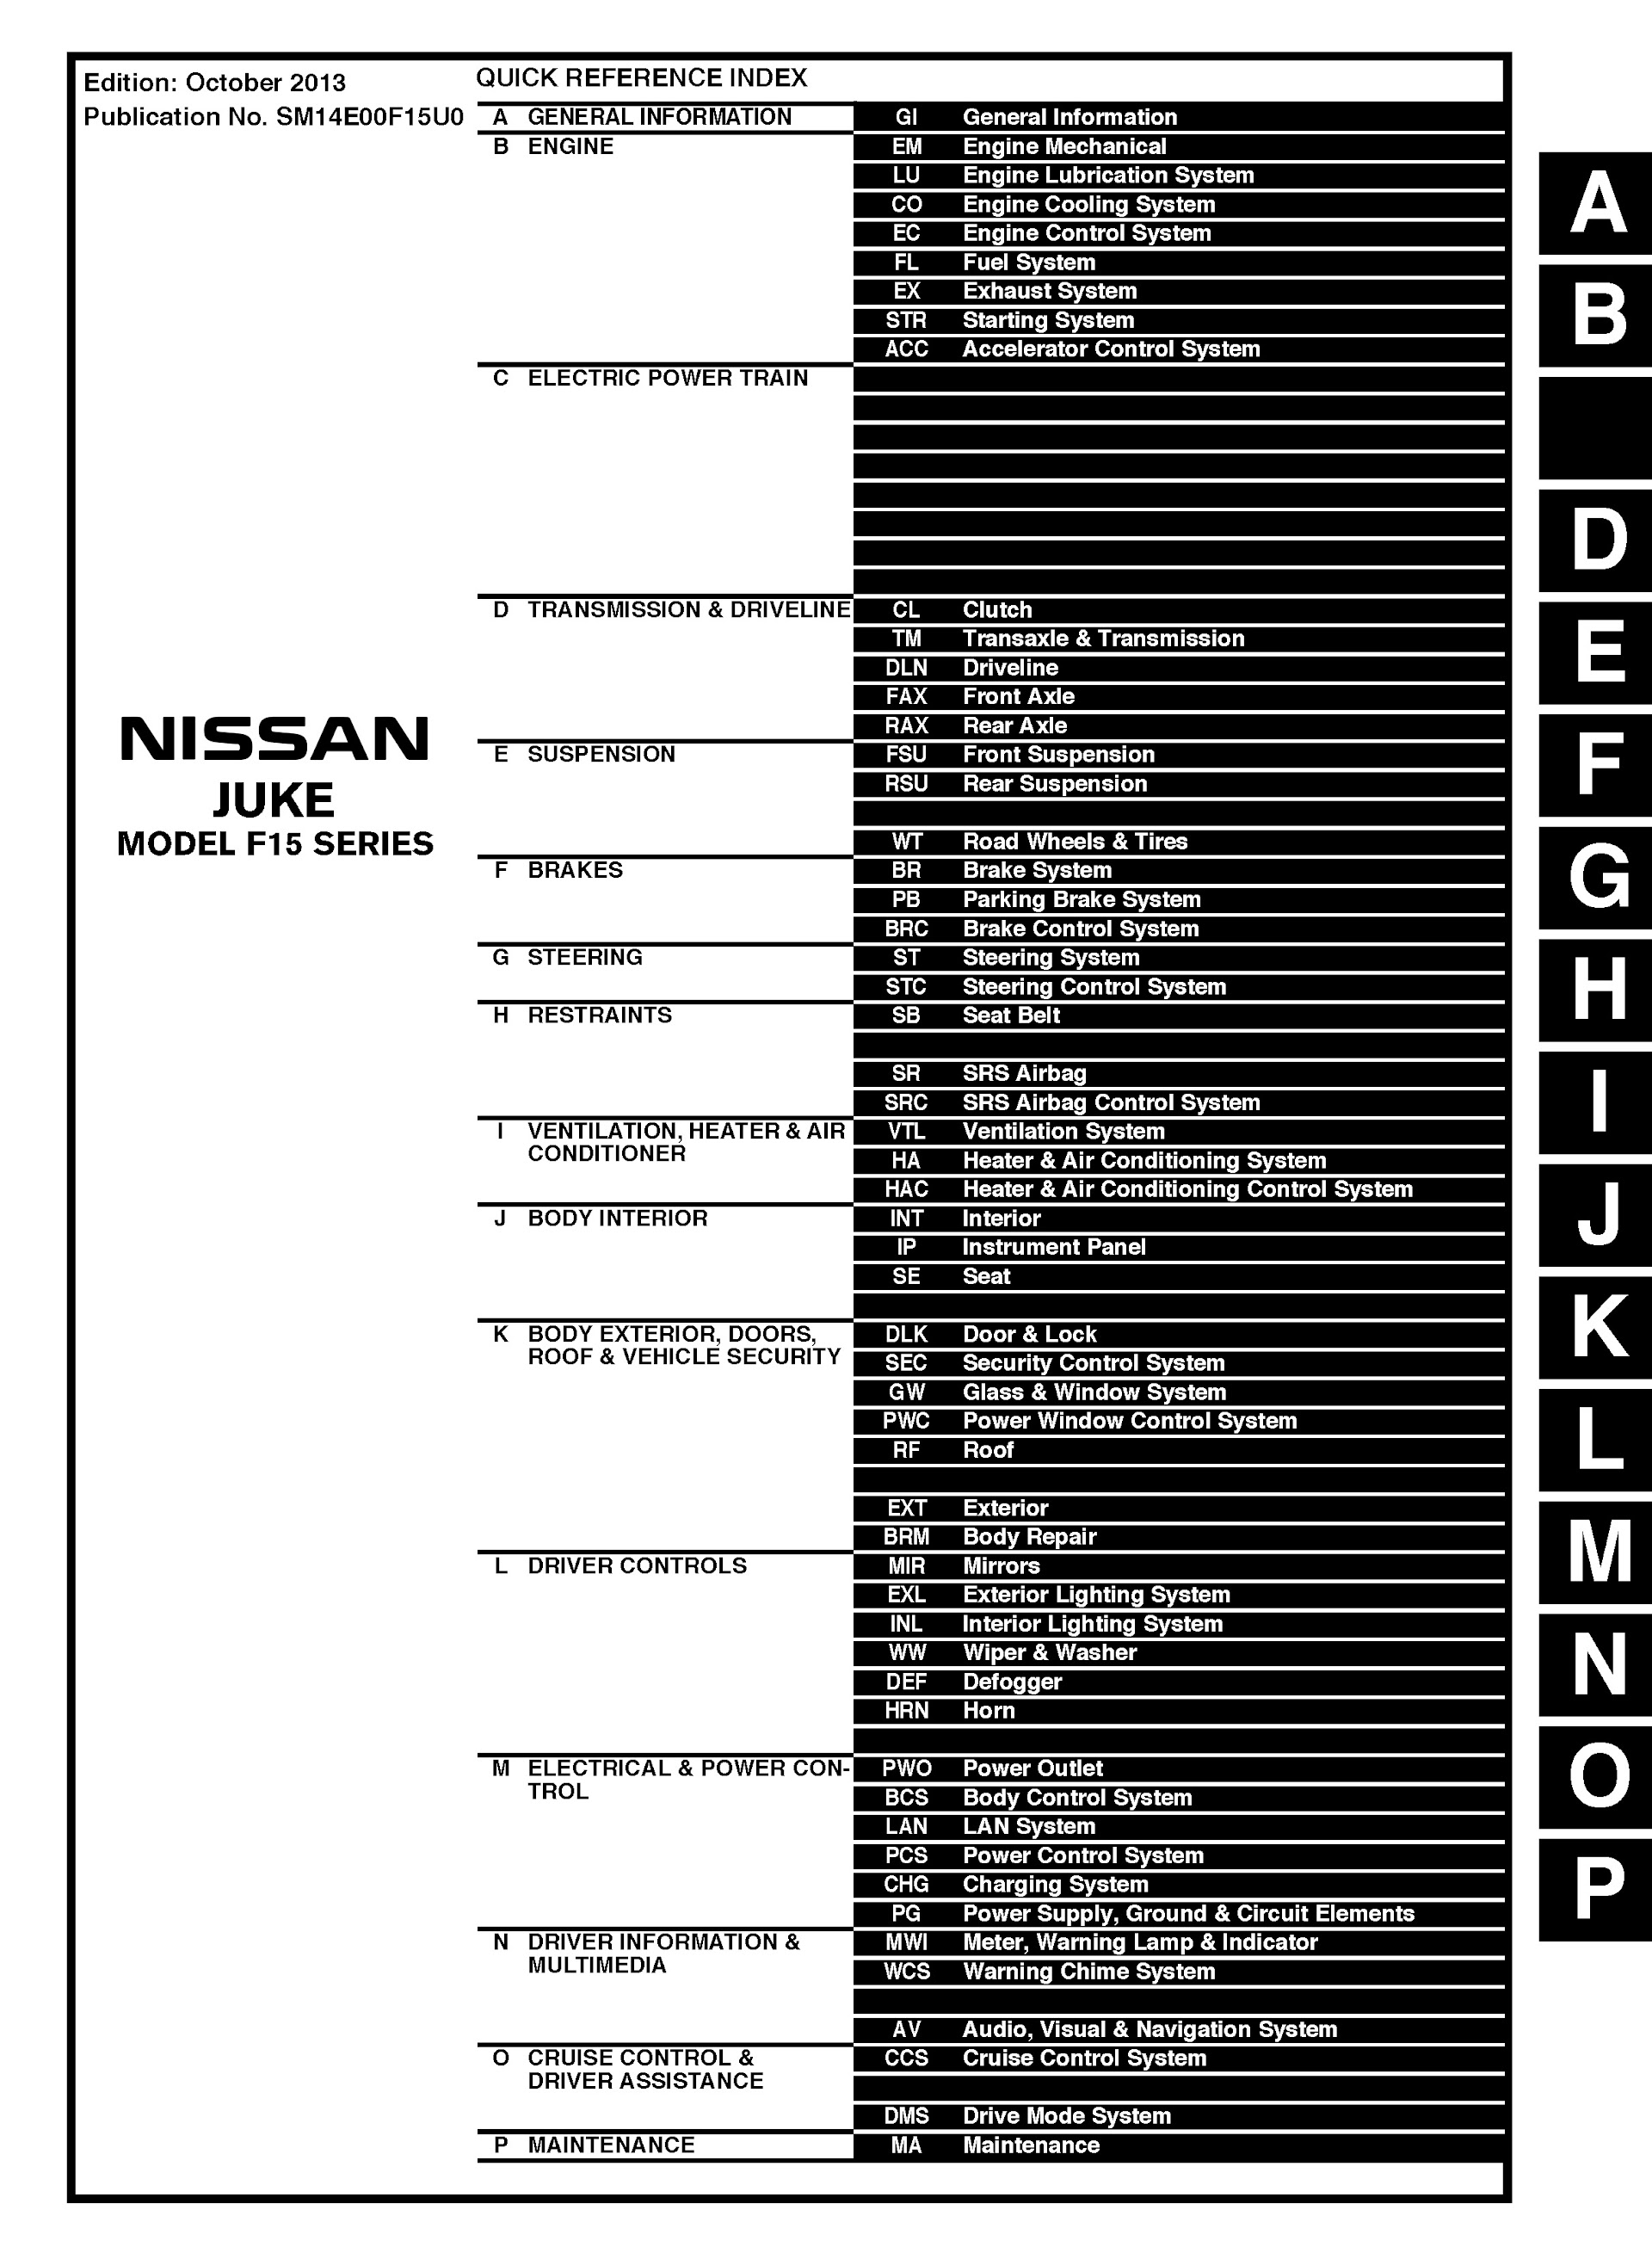 Table of Contents 2014 Nissan Juke Repair Manual